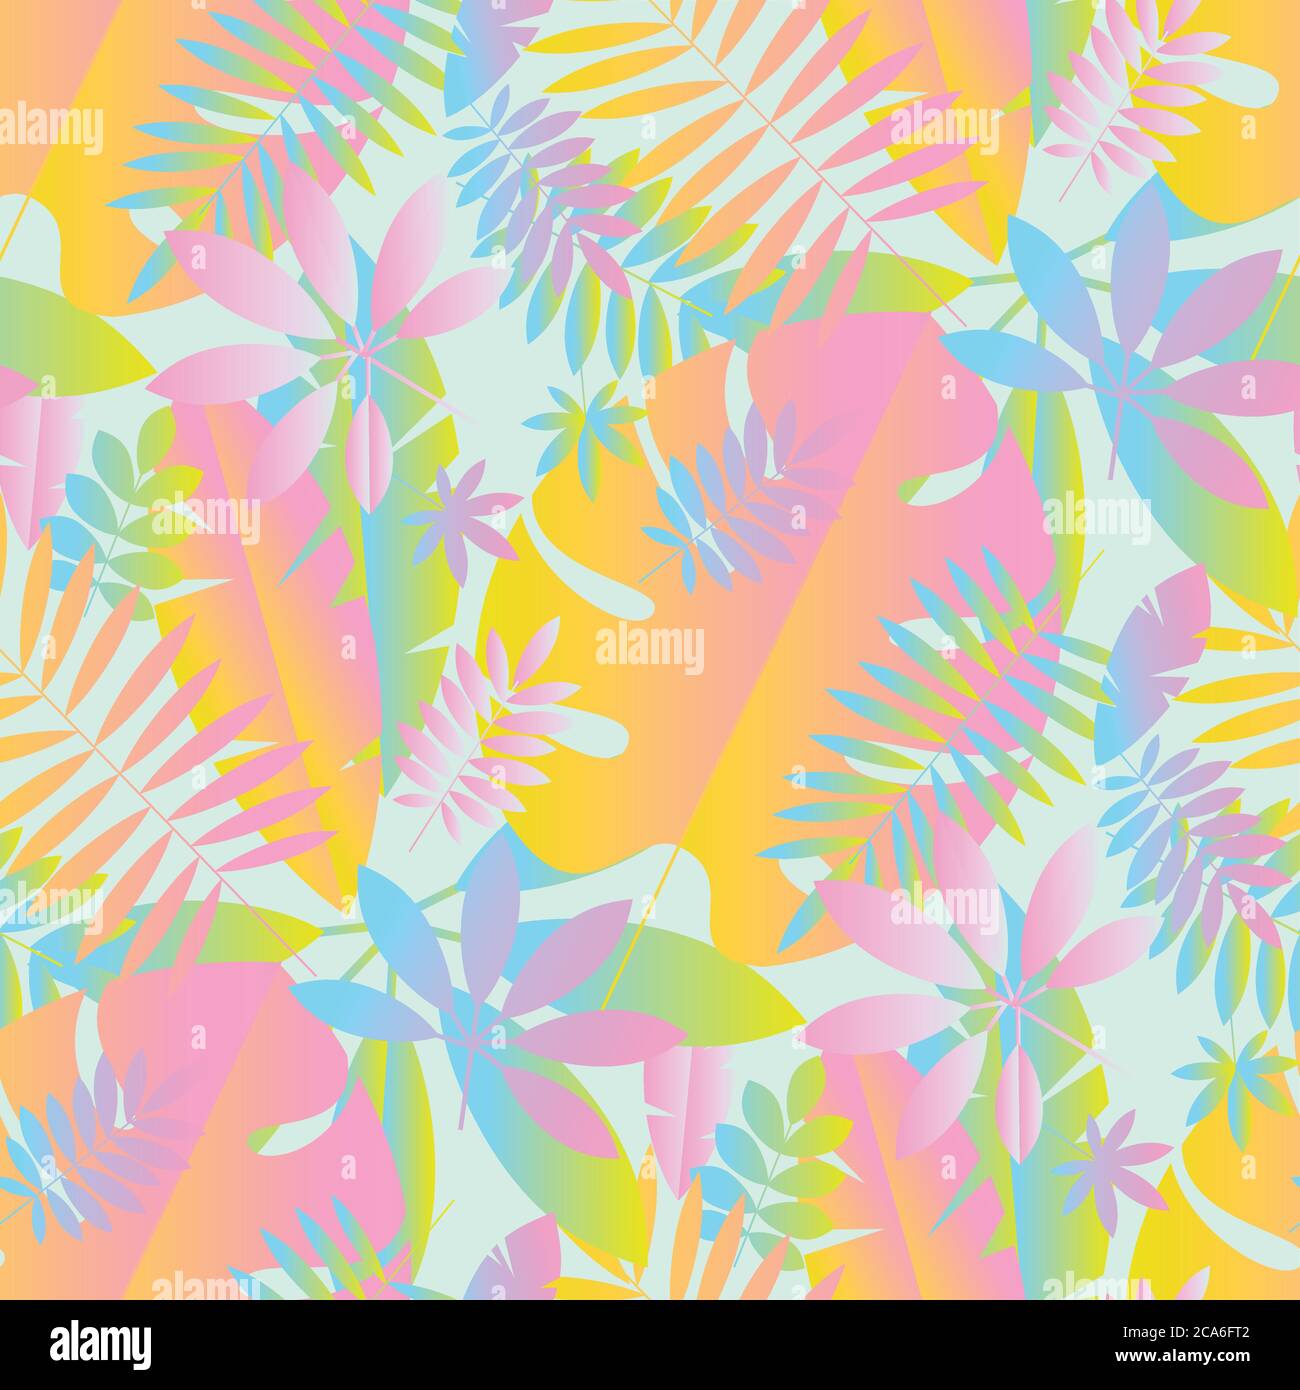 Bunte Pastell Neonfarben geometrische Blätter nahtlose Muster für Hintergrund, Stoff, Textil, Wrap, Oberfläche, Web-und Print-Design. Tropische Natur ab Stock Vektor